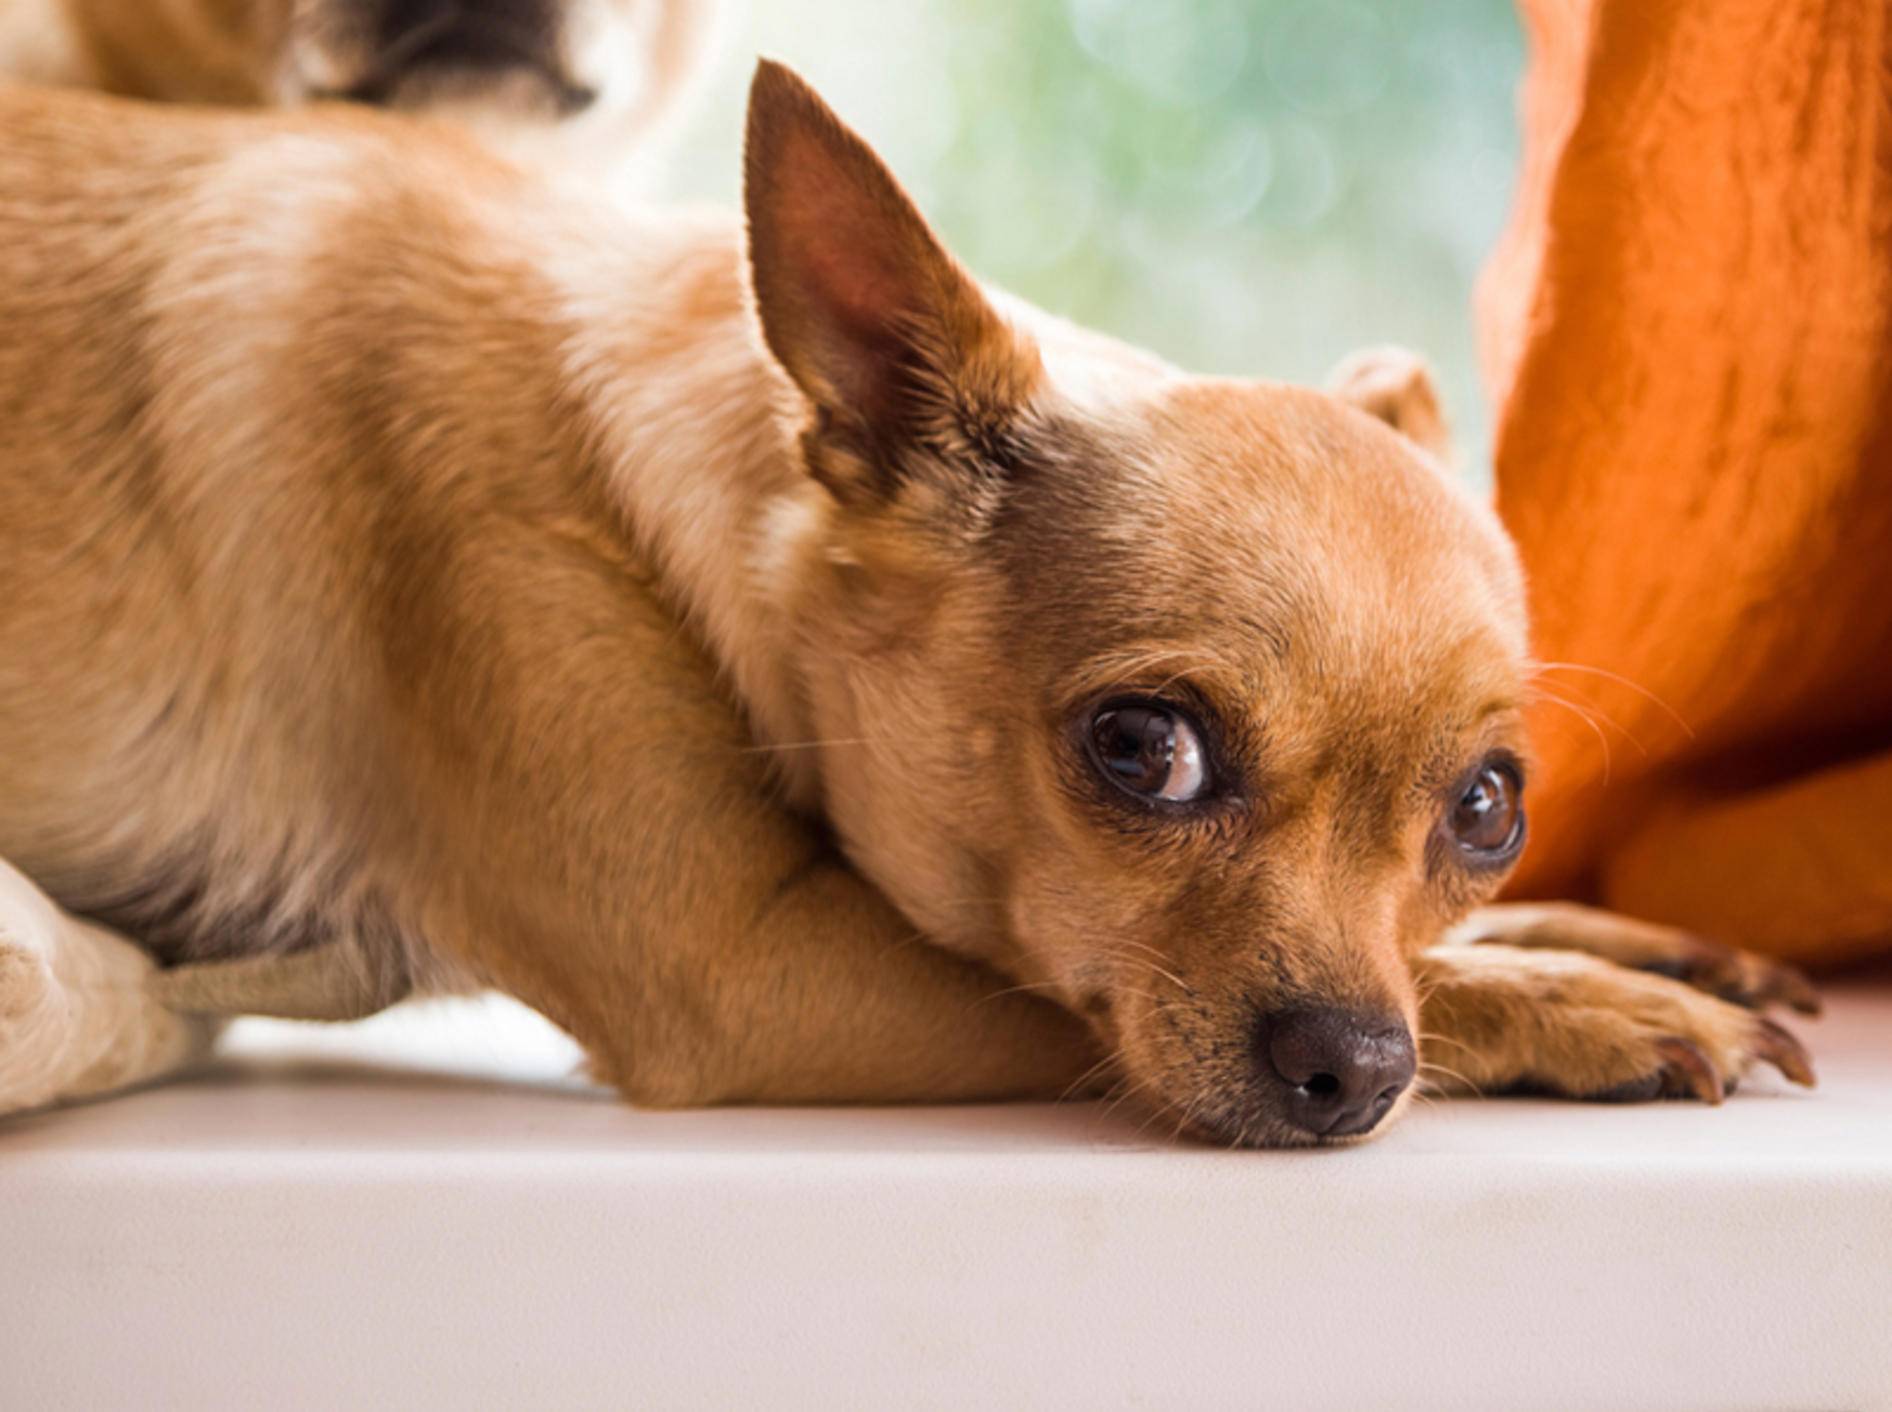 Eine schnelle Behandlung ist bei einem Hund mit Blutvergiftung elementar – Bild: Shutterstock / pixbull